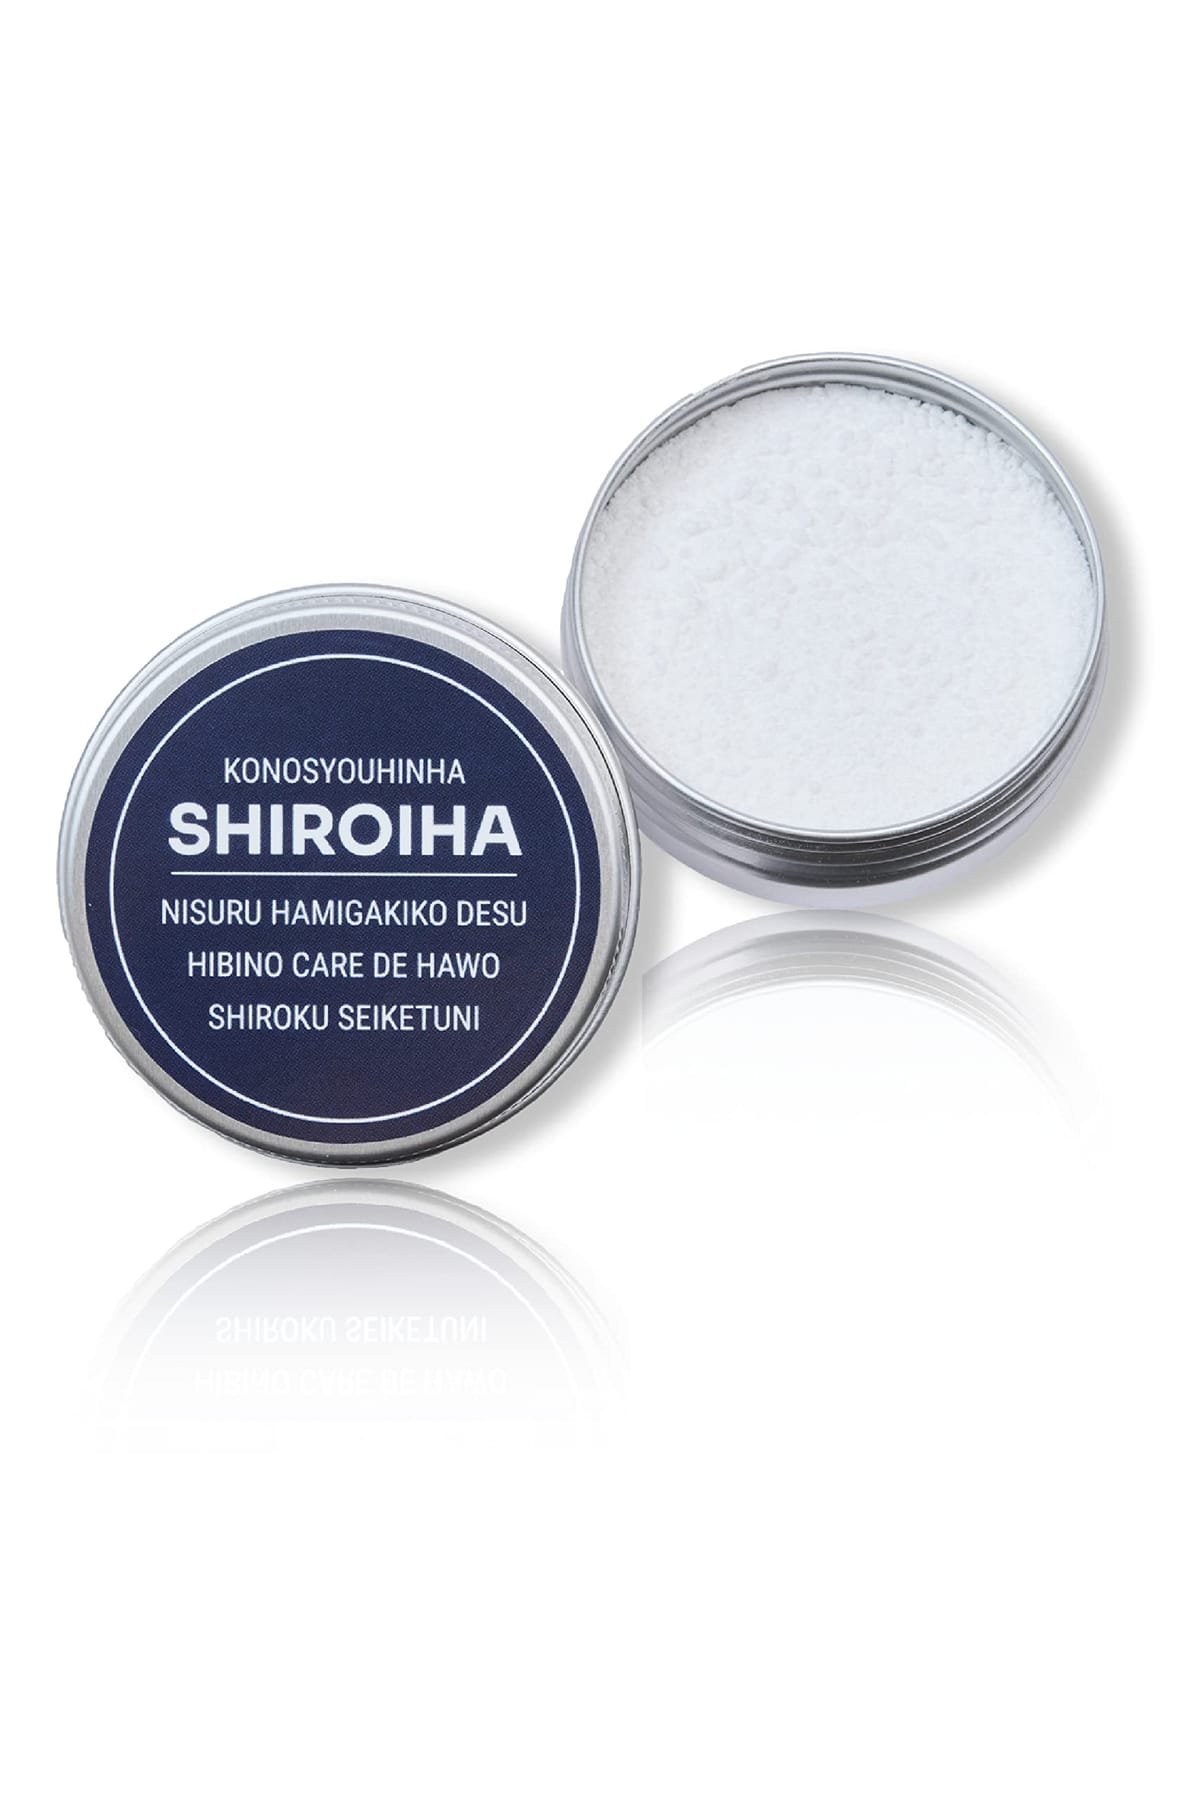 シロ ハンドソープ ホワイトニング 歯磨き粉 天然アパタイト 乳酸菌 パウダー はみがき粉 SHIROIHA 内容量18g (約1ヶ月分)